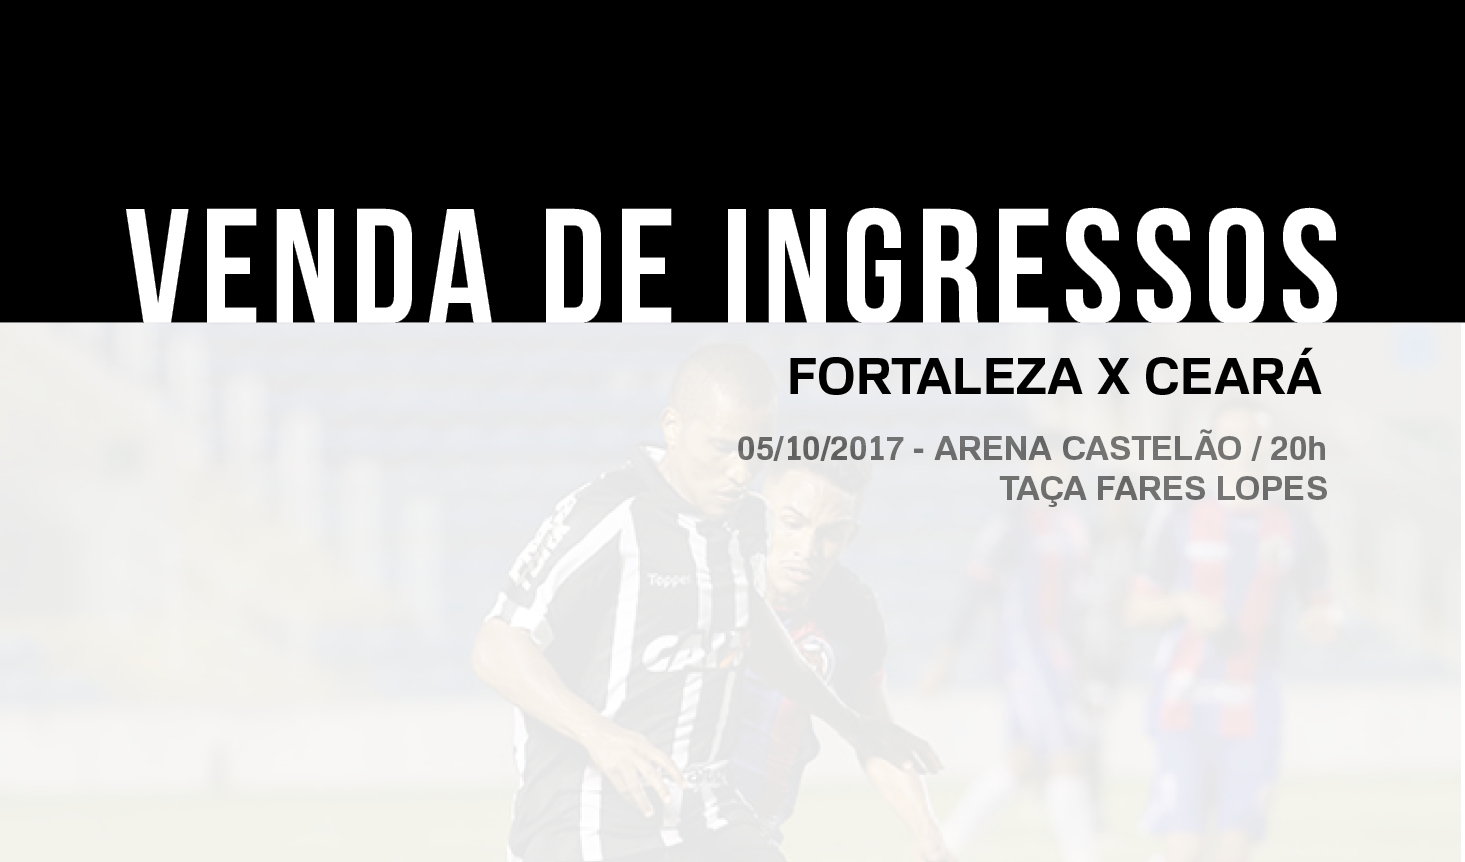 Fortaleza x Ceará: Confira informações sobre a venda de ingressos